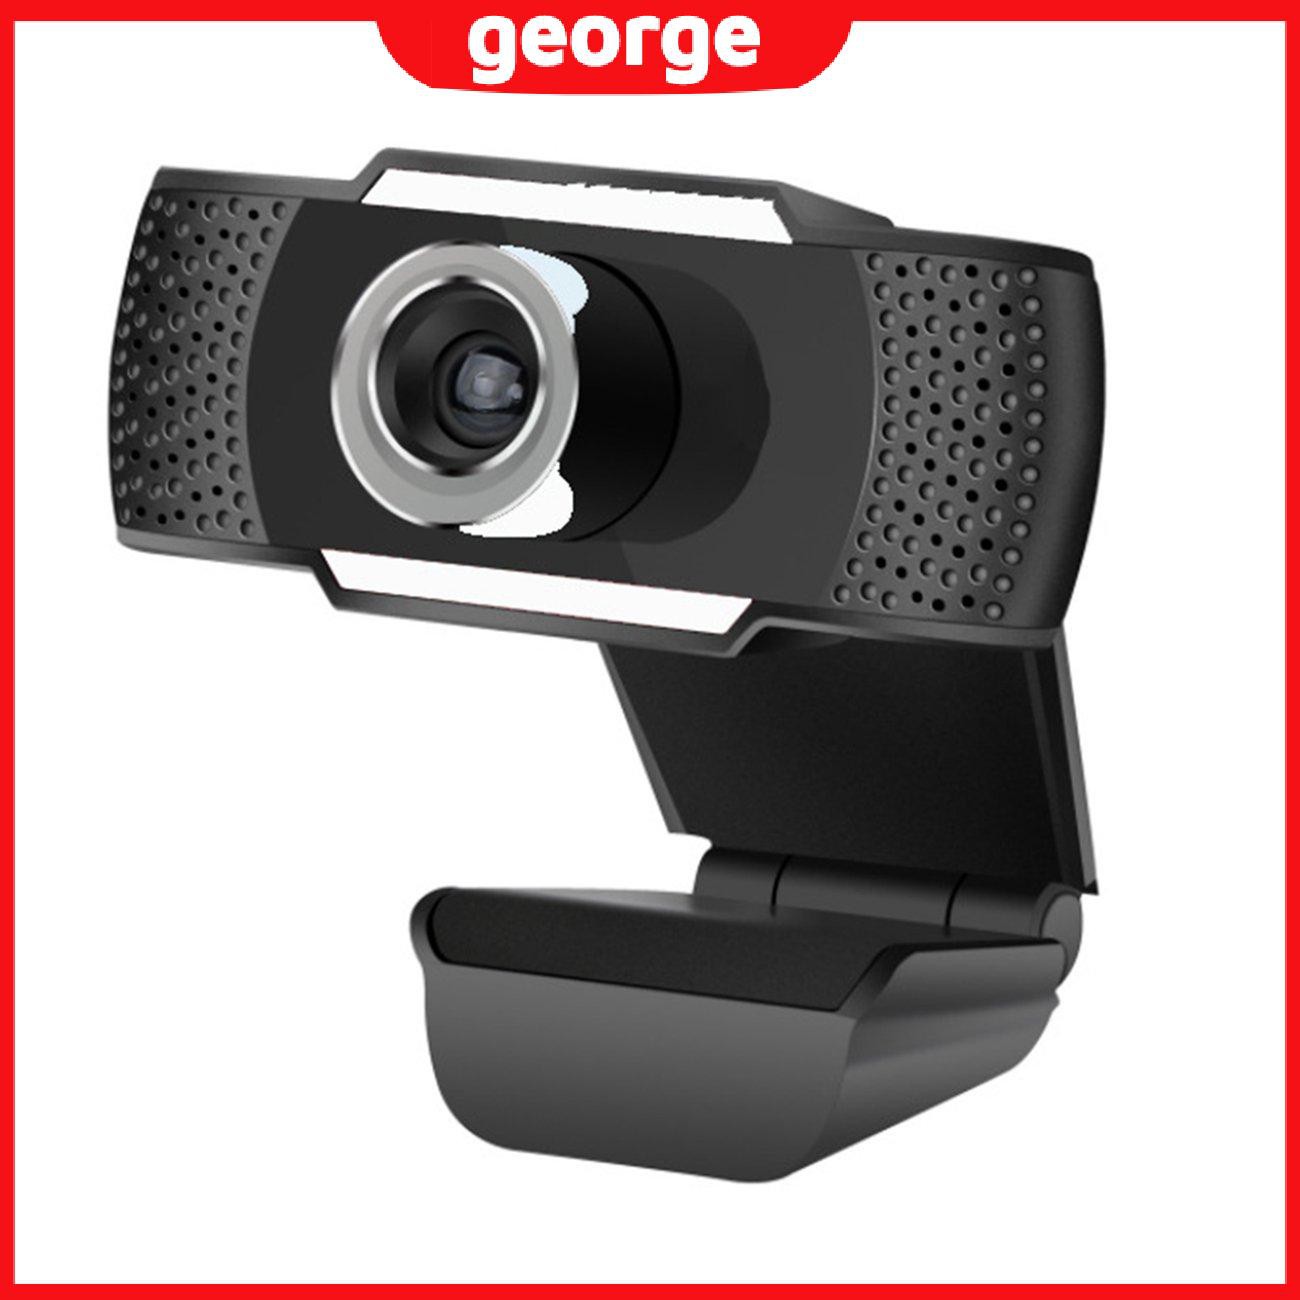 1 Webcam 12 Million Pixels 1080p Tự Động Lấy Nét Kèm Micro Cho Máy Tính Laptop Notebook